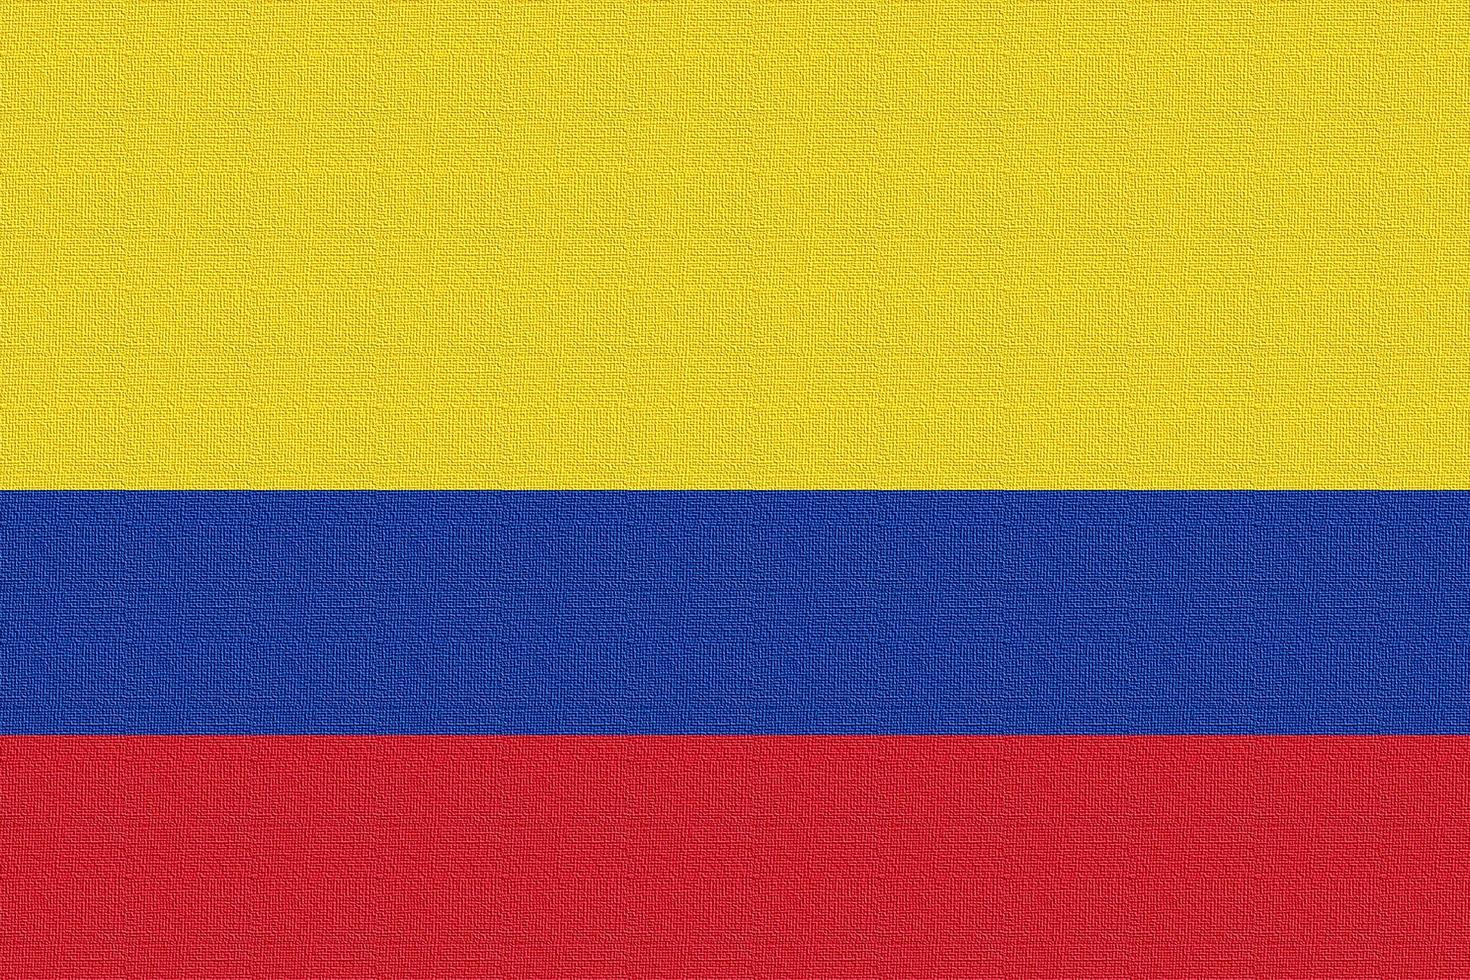 Abbildung der Nationalflagge von Kolumbien foto